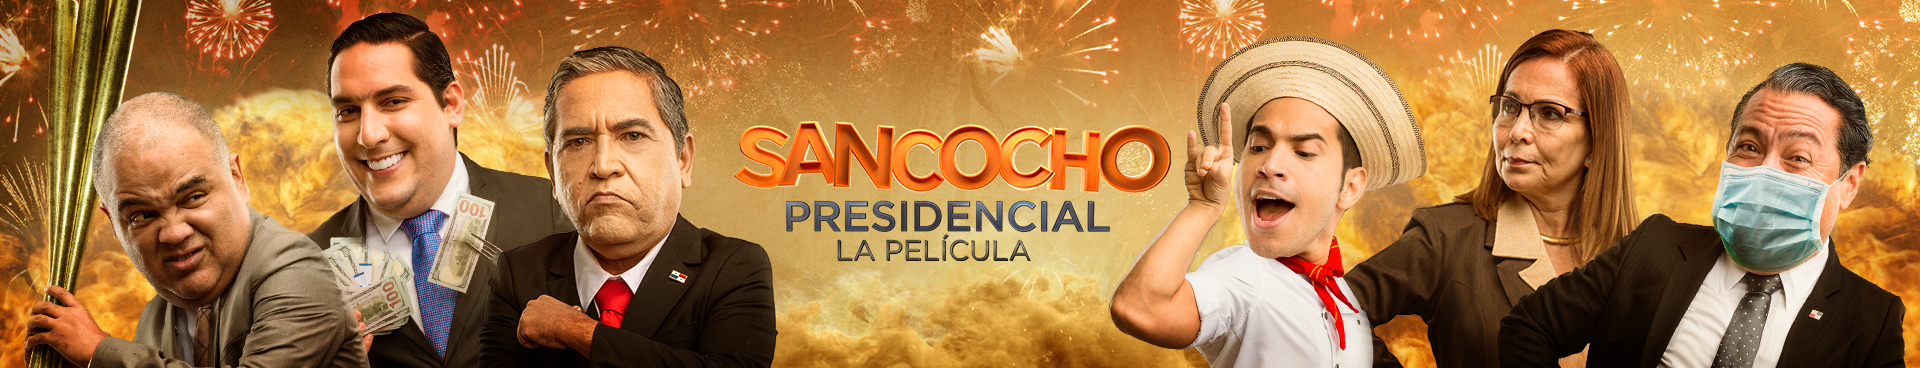 Sancocho Presidencial